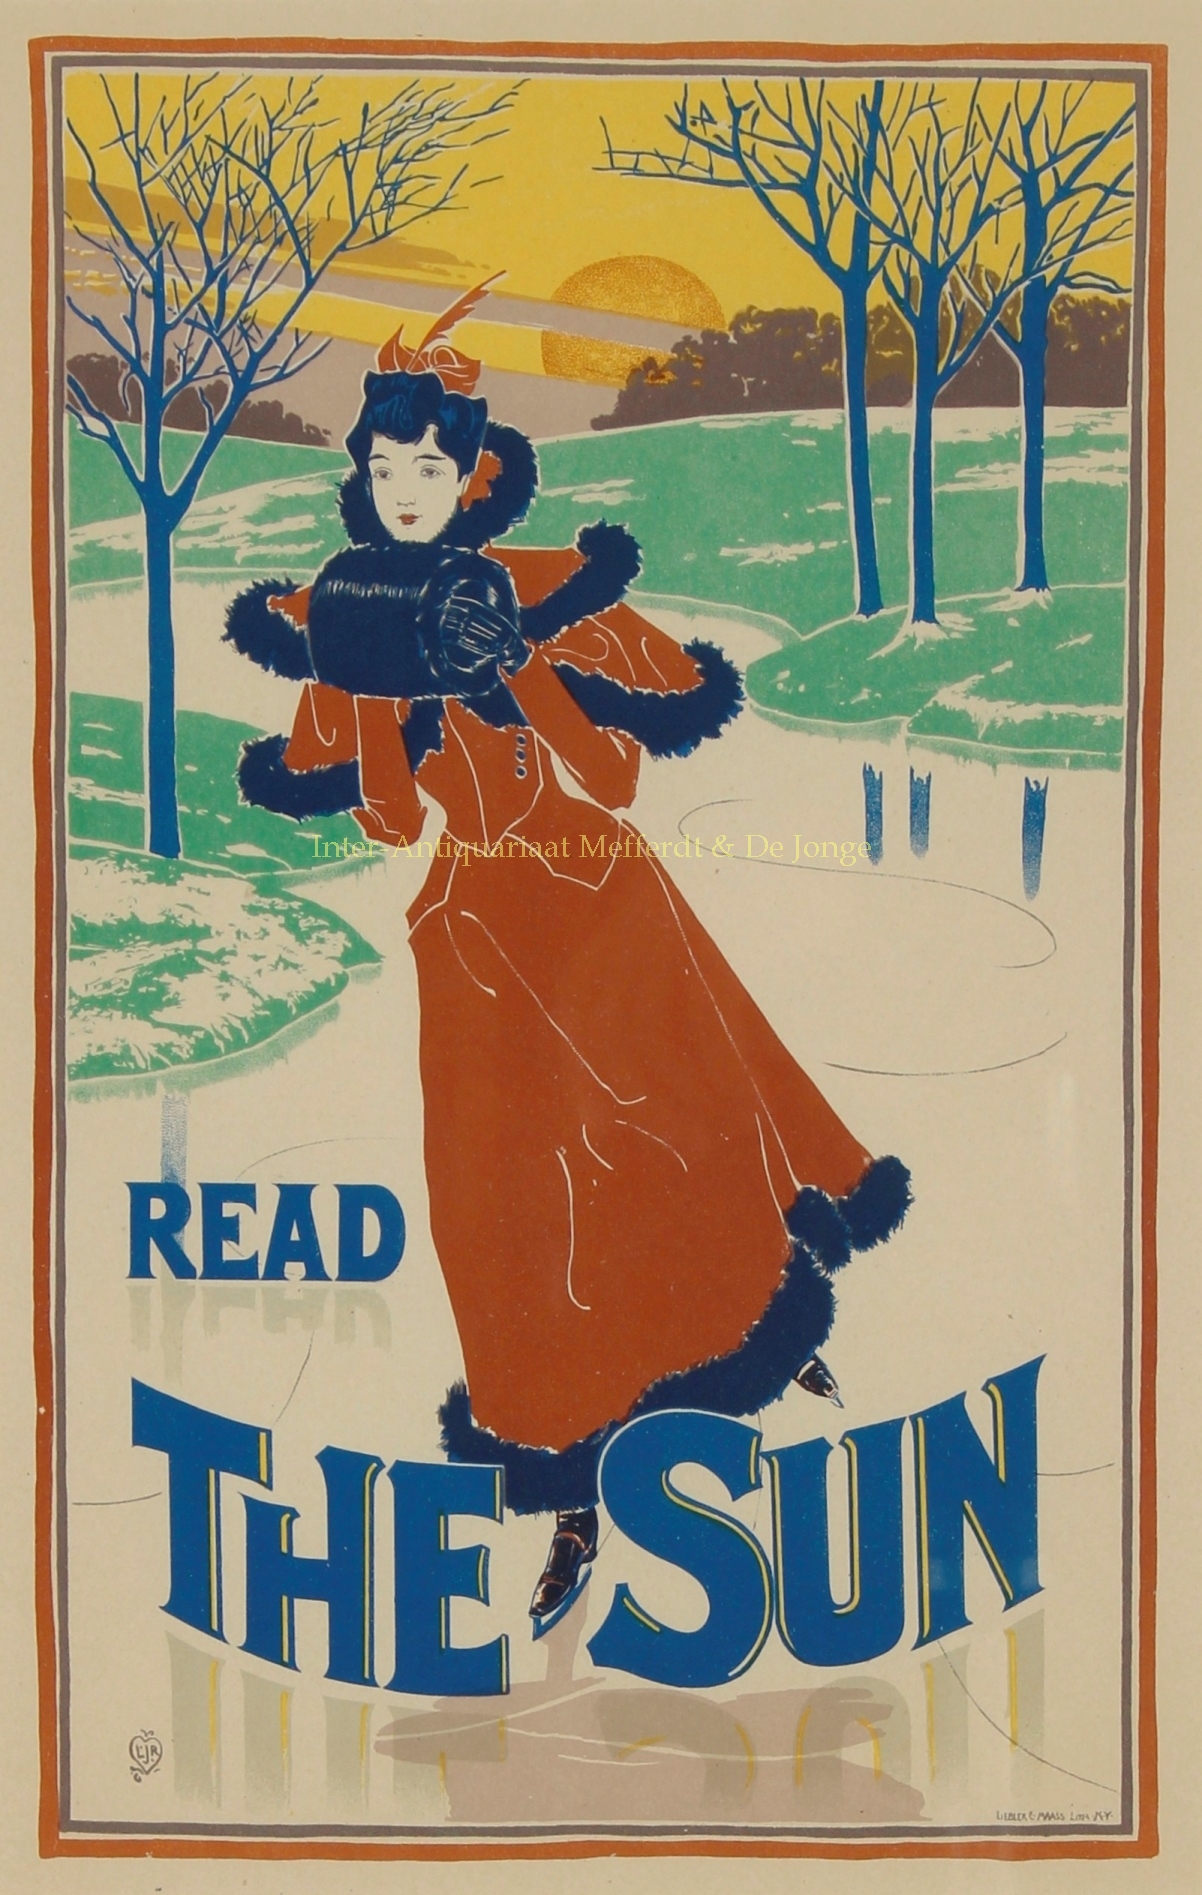  - Read The Sun - Louis John Rhead, 1895-1900